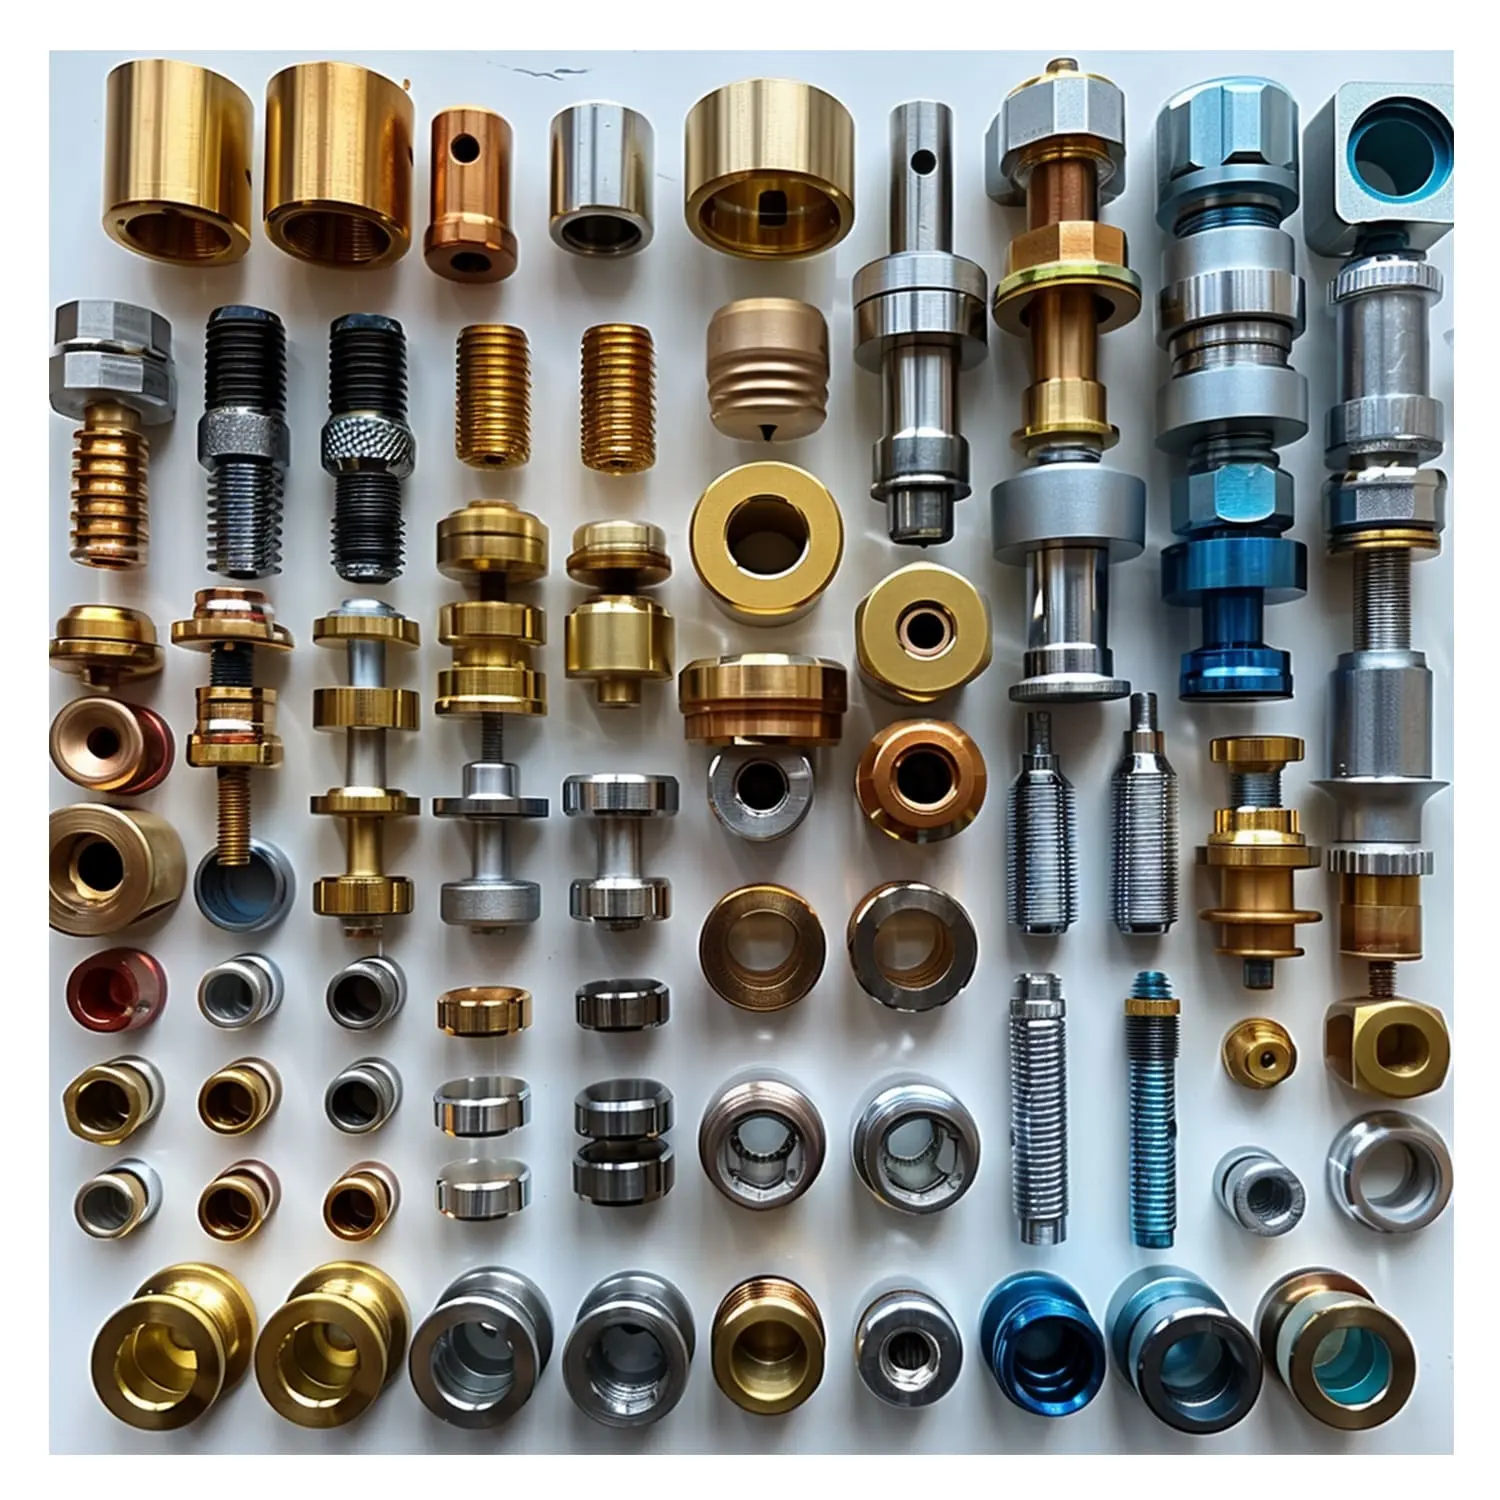 Piezas de metal personalizadas, acero inoxidable, aluminio, torneado, corte, fresado, precisión, prototipo rápido, servicio de mecanizado, piezas CNC